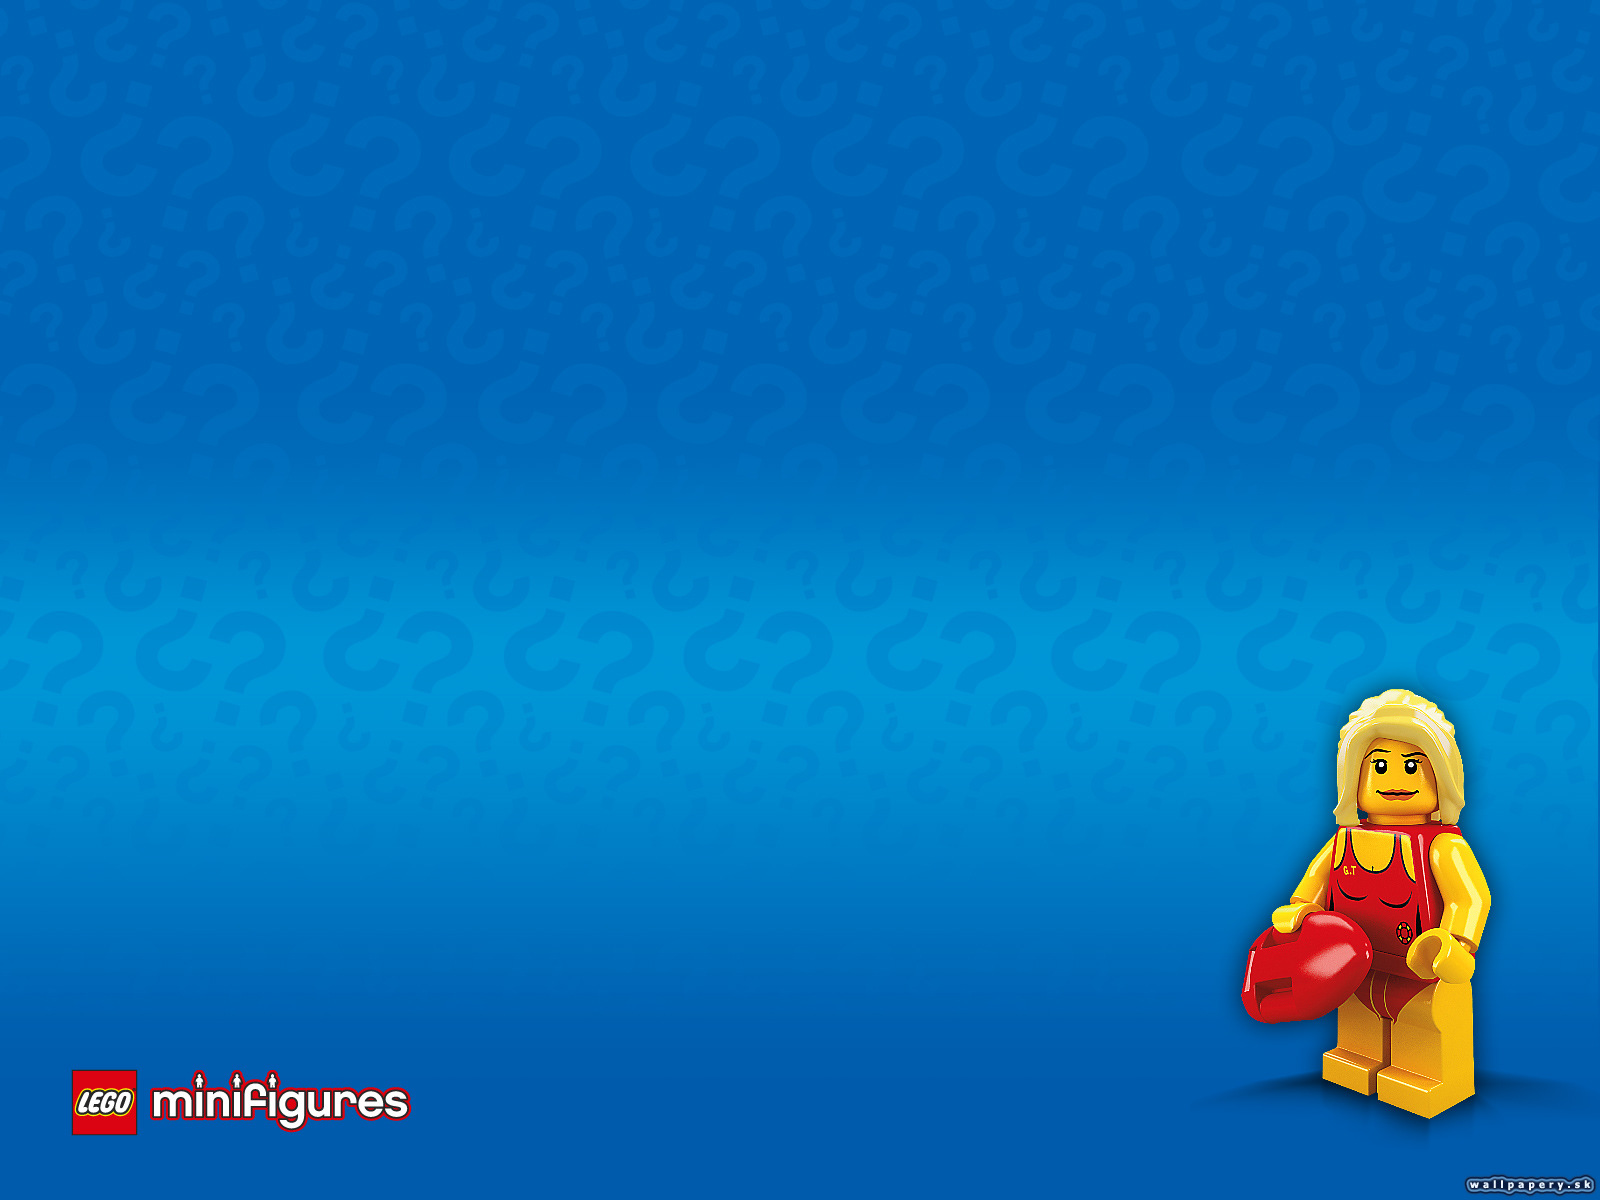 LEGO Minifigures Online - wallpaper 31